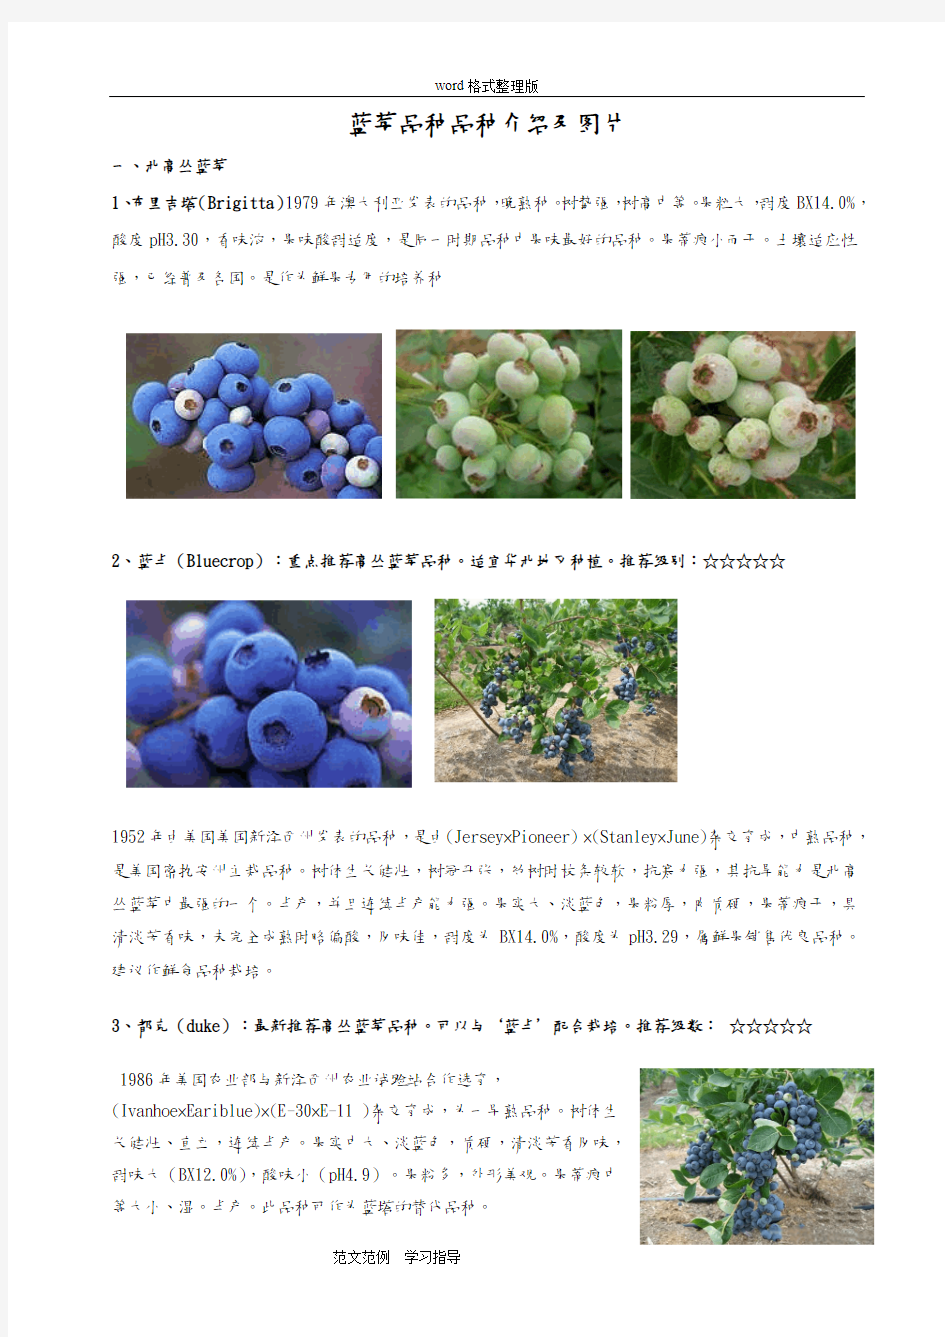 蓝莓品种品种介绍和图片